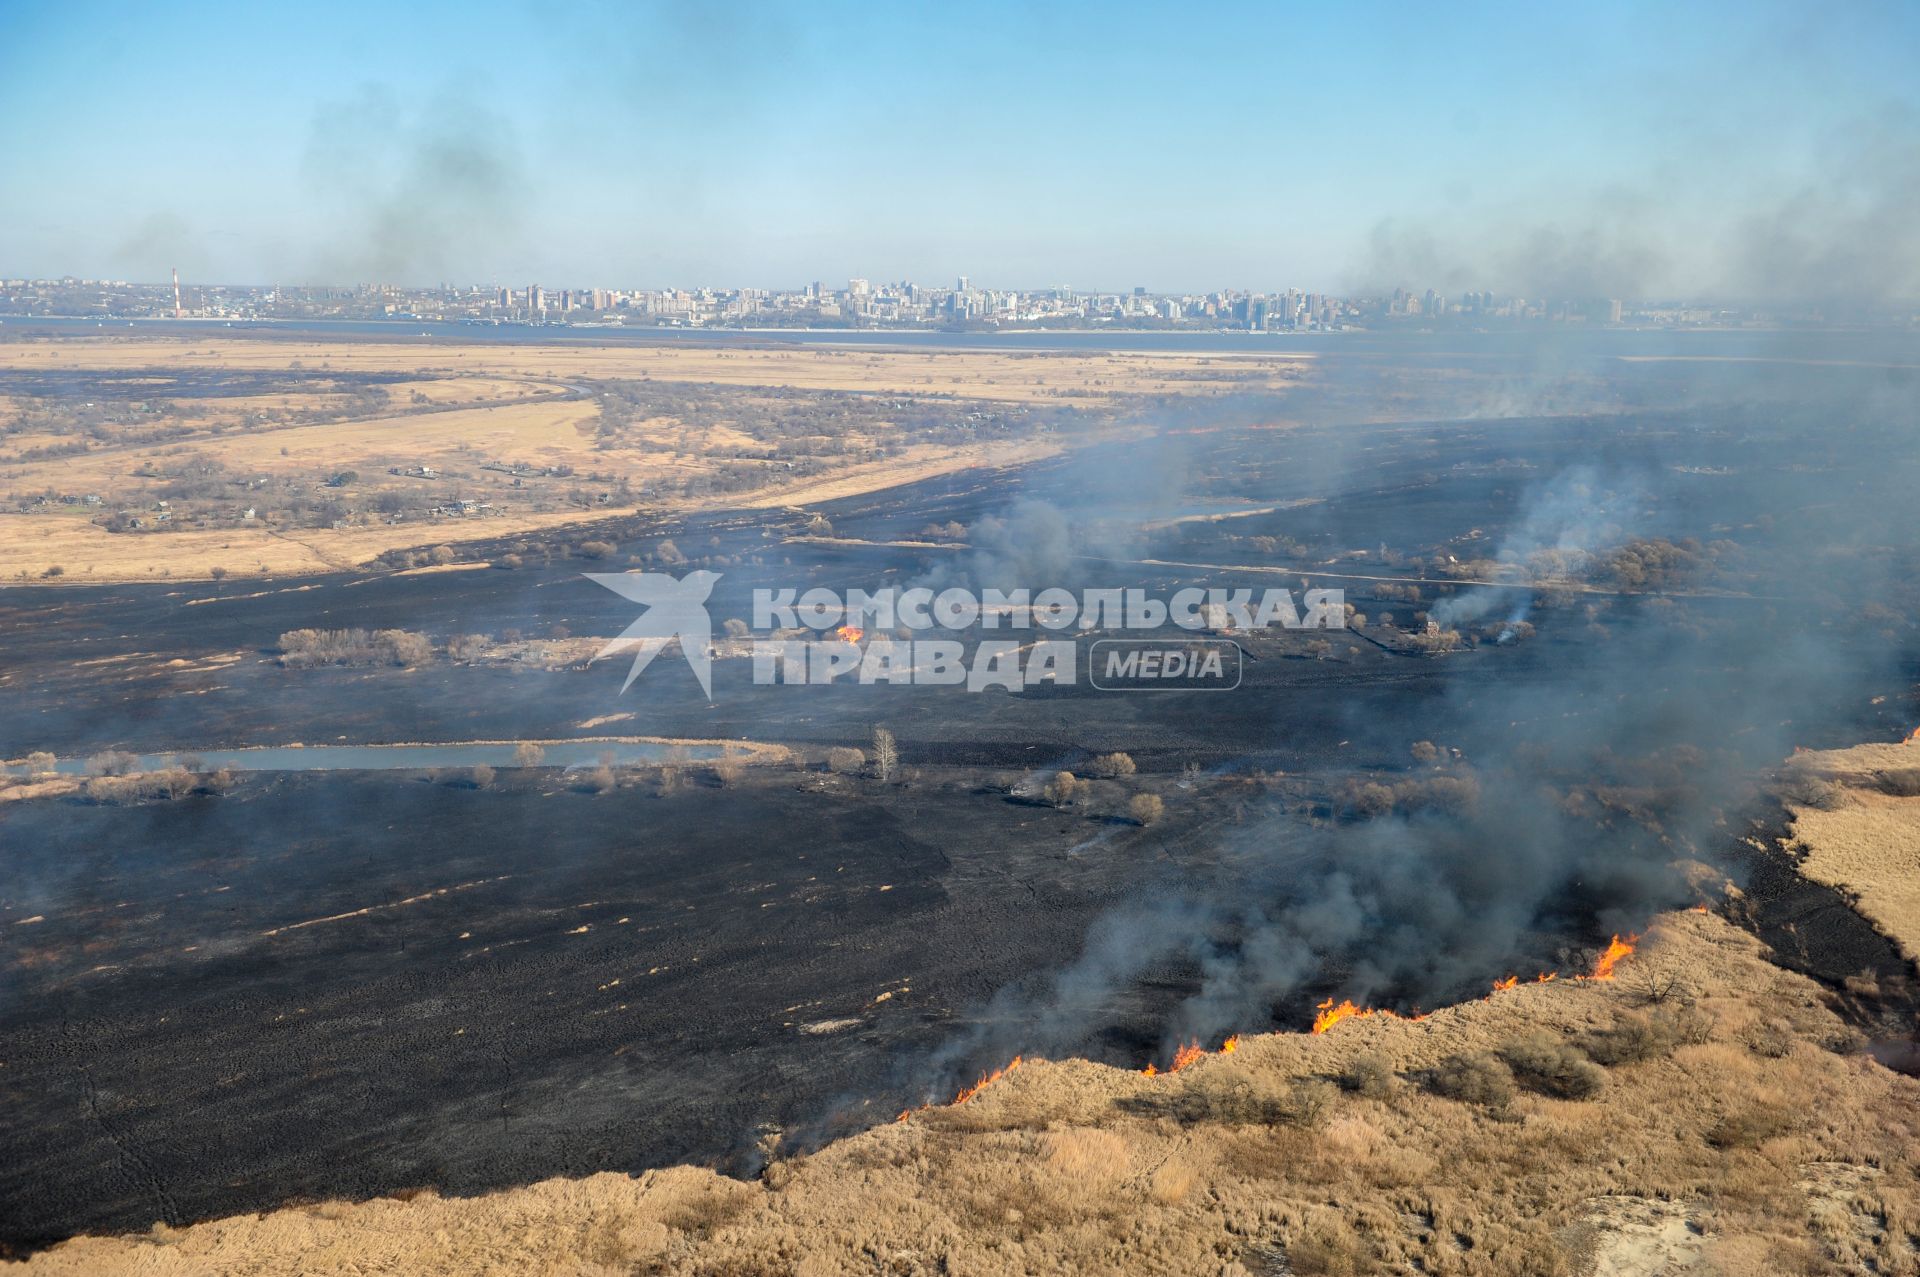 Хабаровск. Вид с самолета на горящие поля, дачные дома и город окутанный дымом.